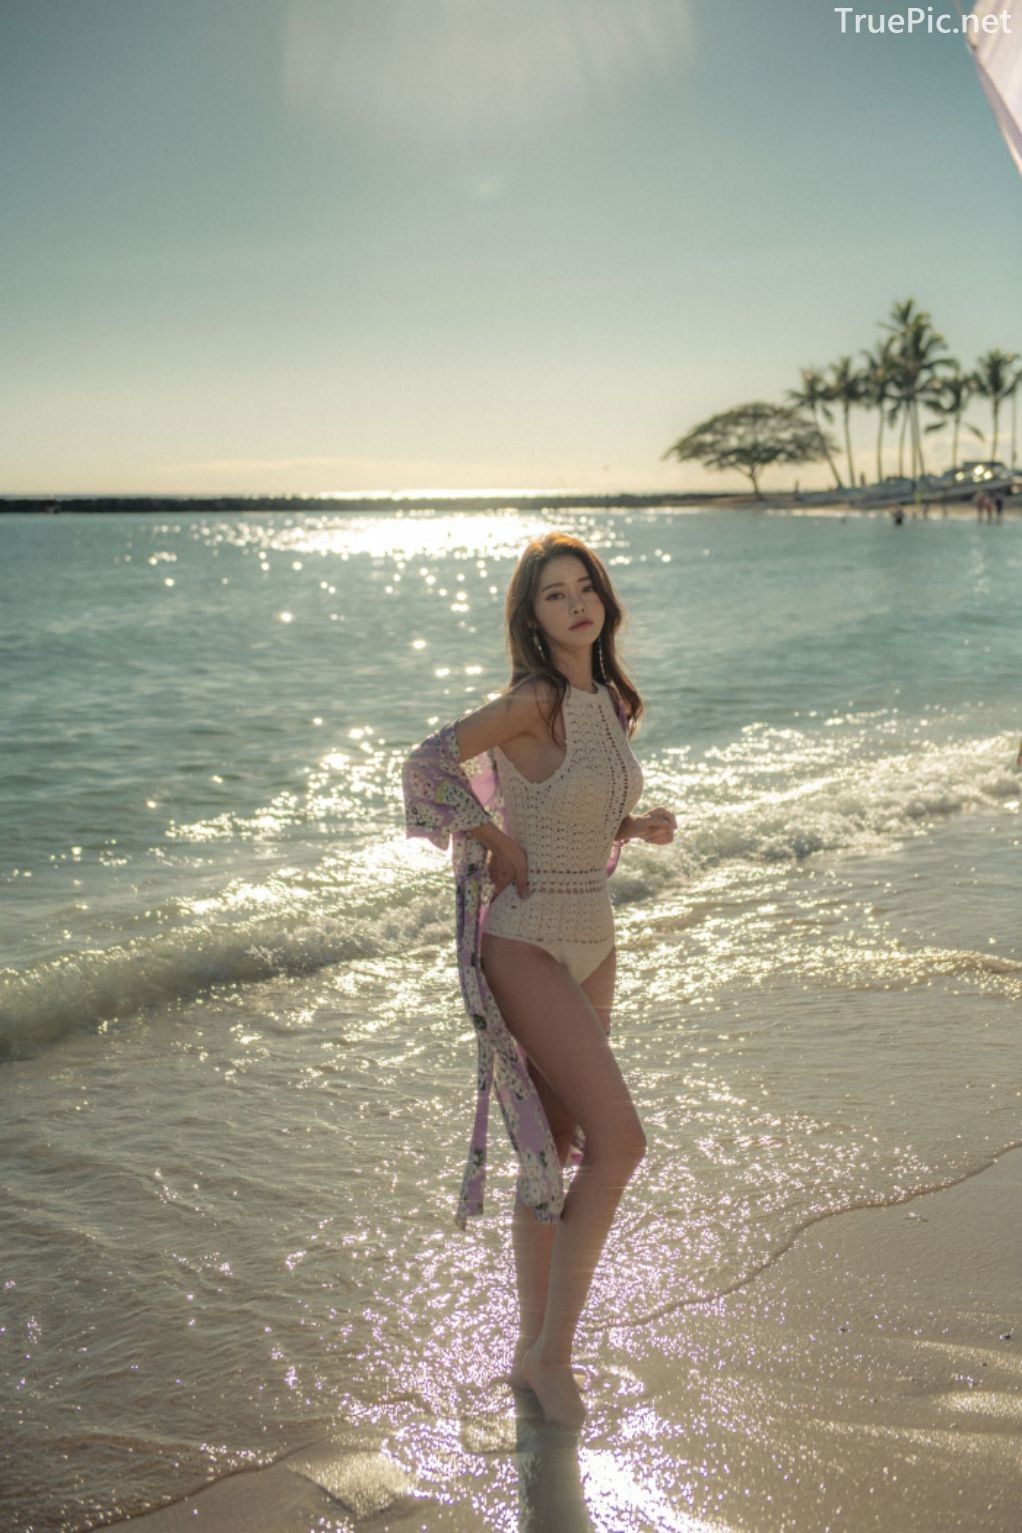 Korean Fashion Model - Kim Moon Hee as an Angel in Summer Swimsuit - TruePic.net - Picture 28